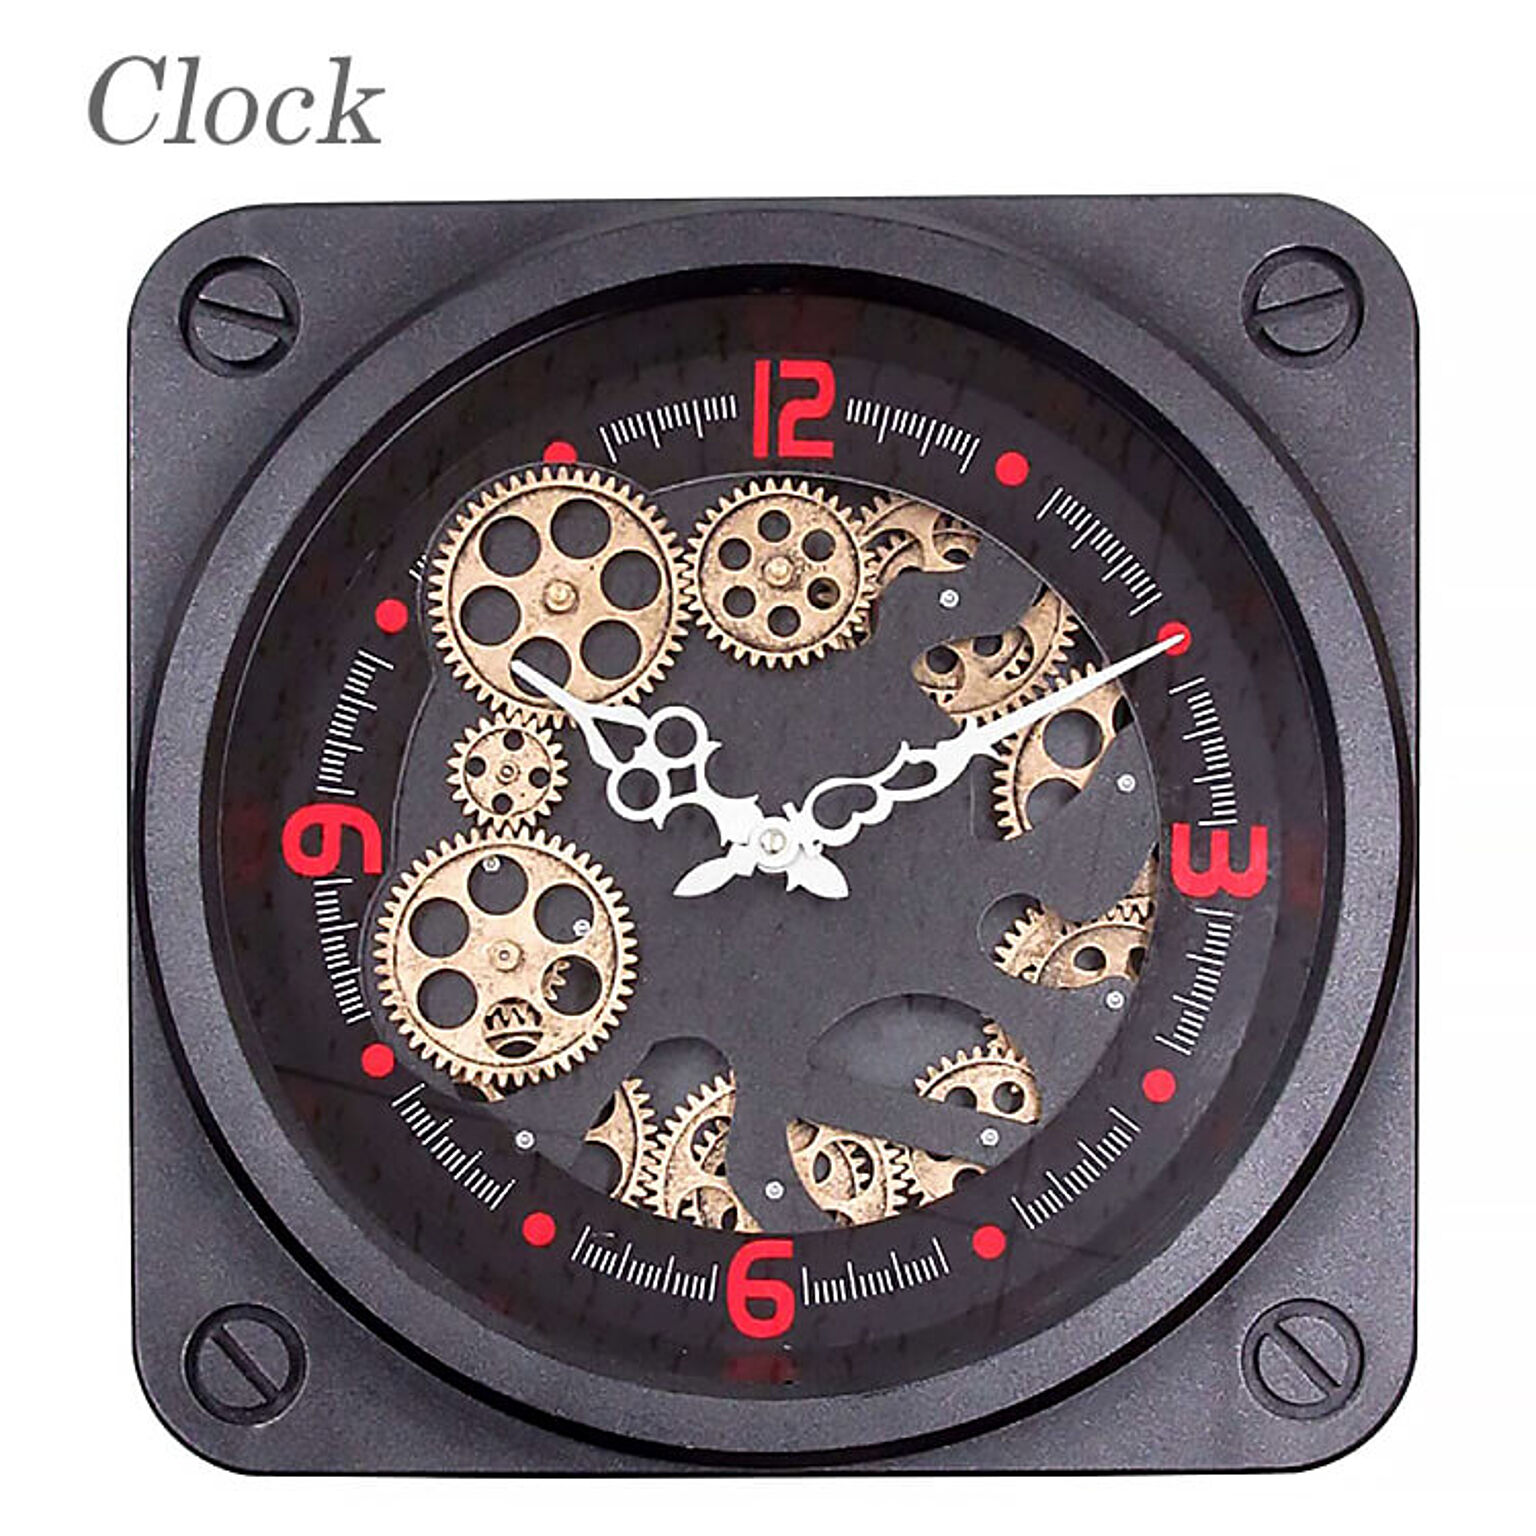 時計 壁掛け時計 おしゃれ 掛け時計 clock 歯車 gearclock クラシック インダストリアル アンティーク 50305 東洋石創 